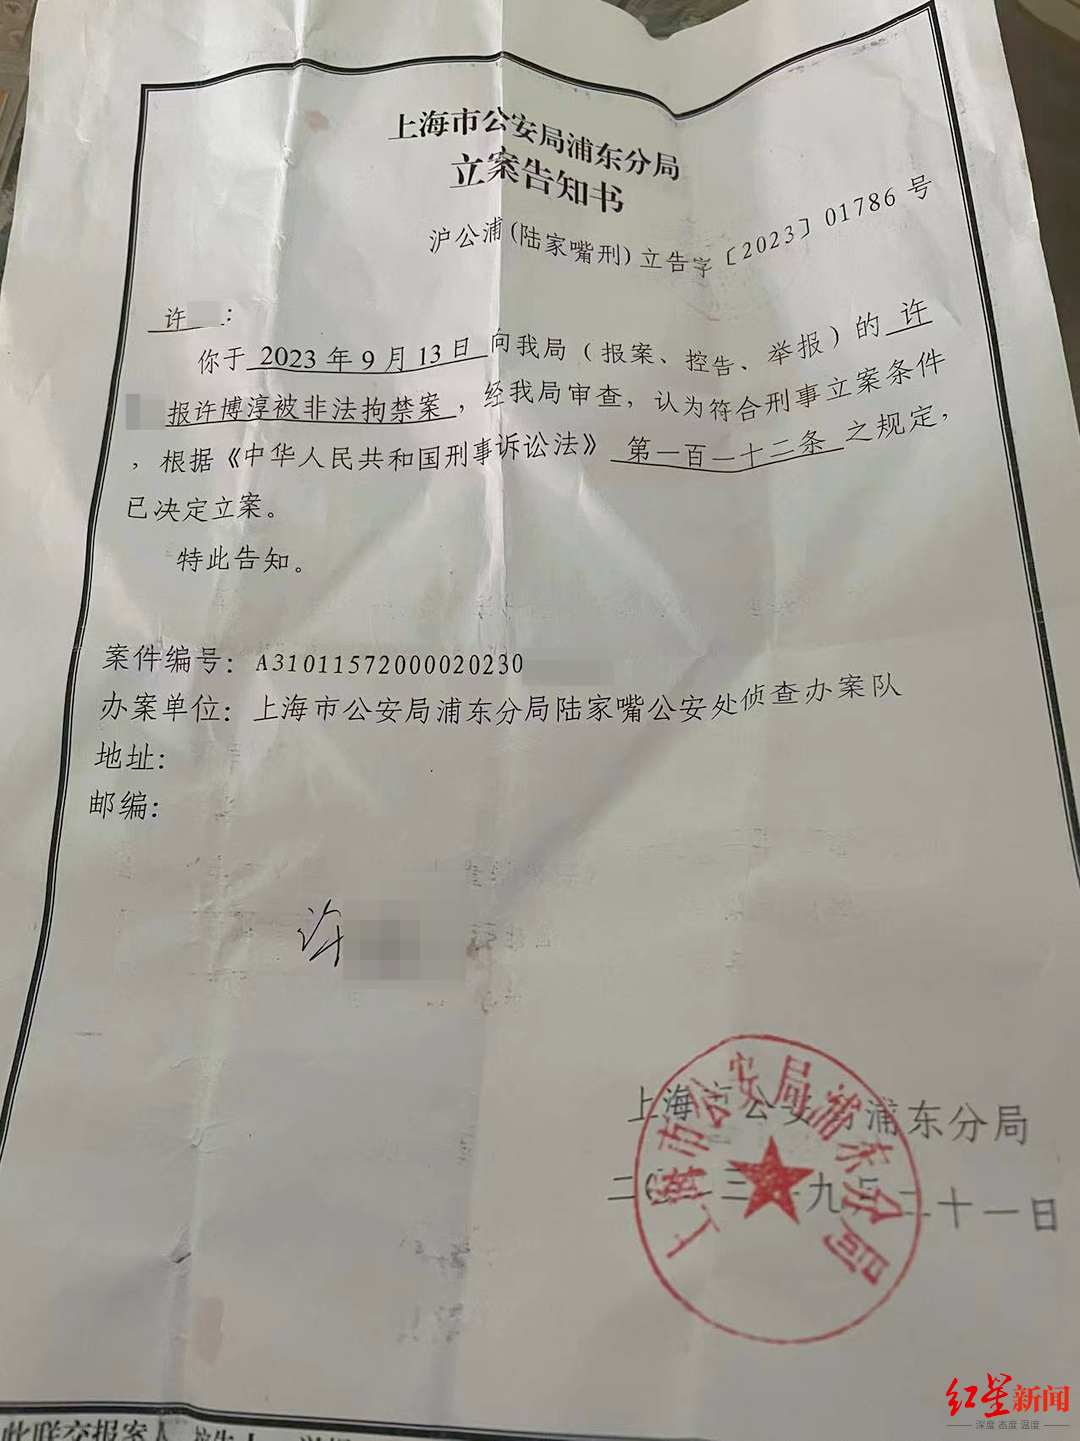 ▲上海市公安局浦东分局开具立案告知书